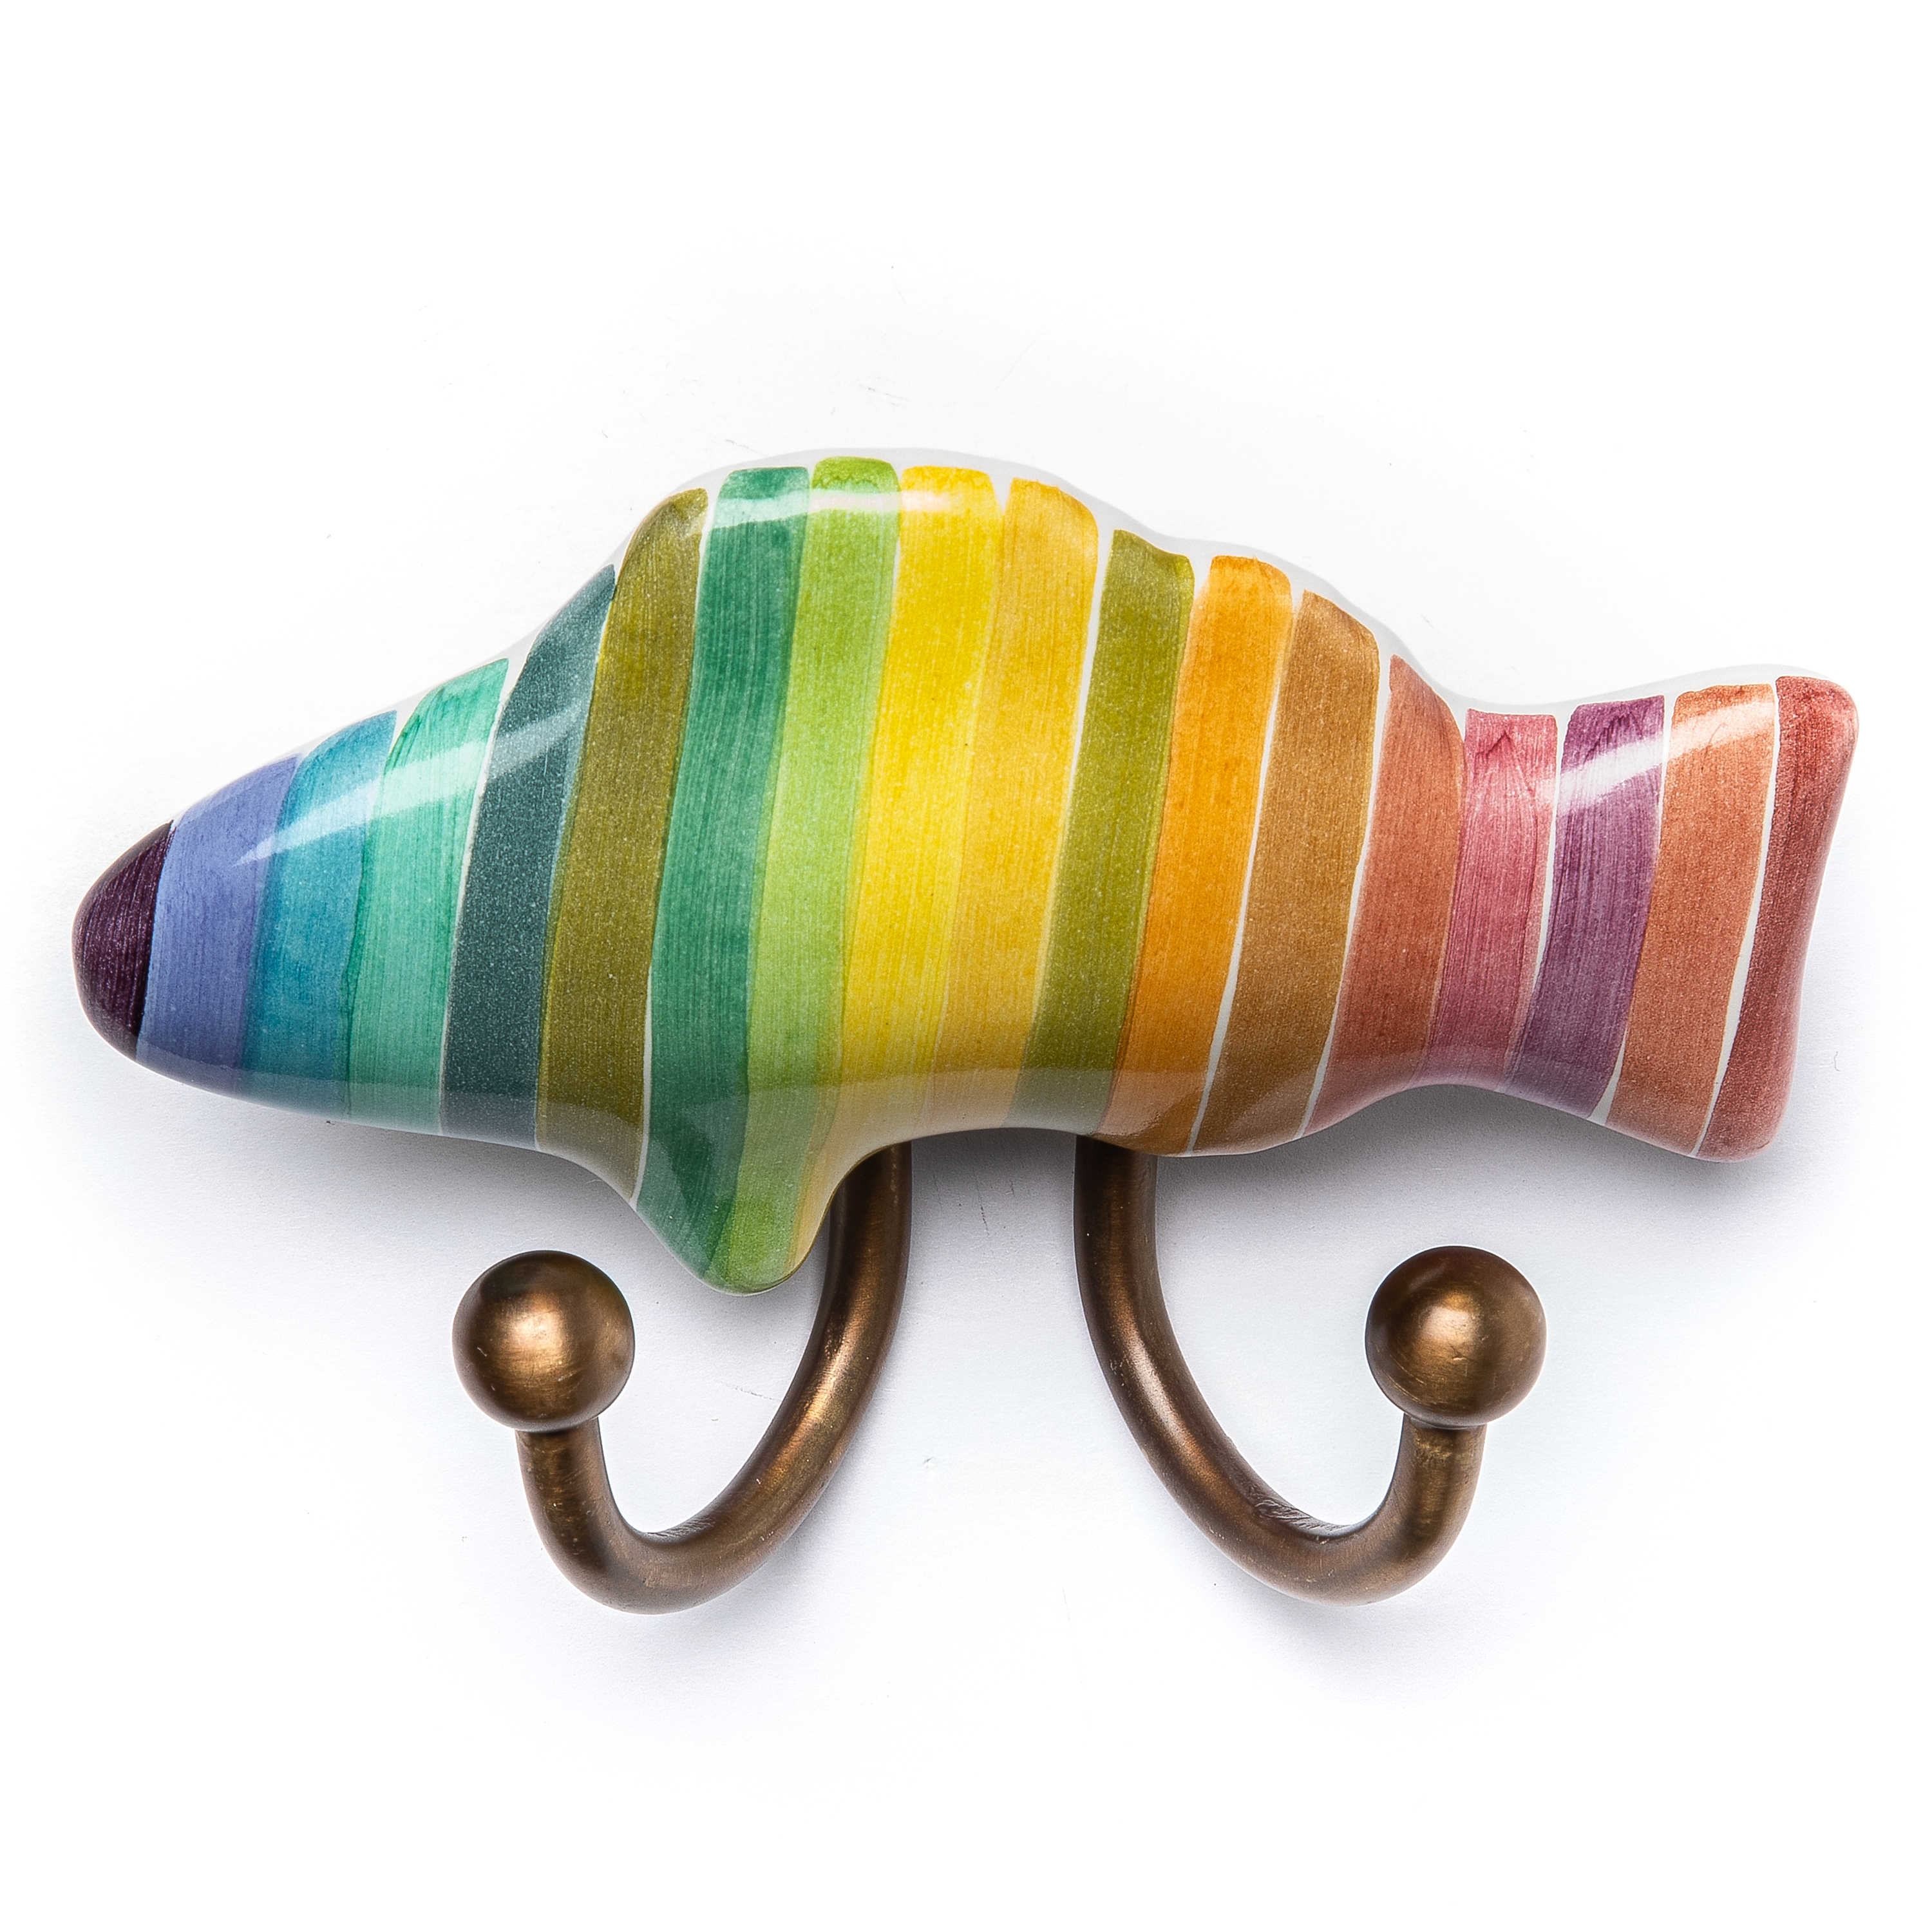 Fish Hook Left - Rainbow mackenzie-childs Panama 0